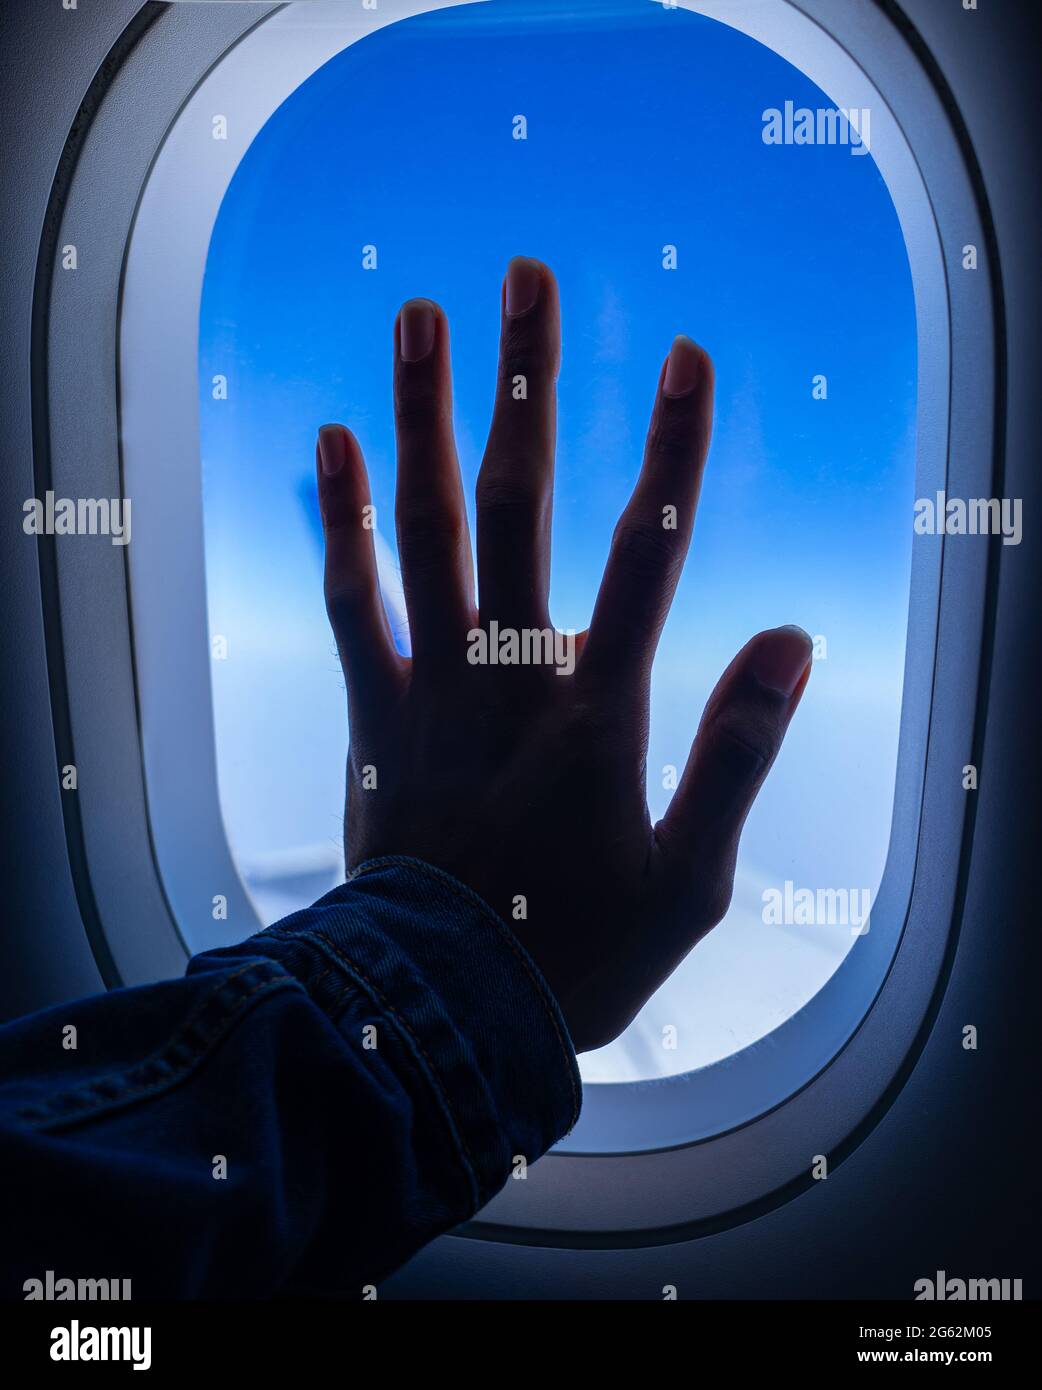 Silueta de una mano masculina adulta joven colocada en una ventana de avión. Concepto de viaje nostálgico. Foto de stock